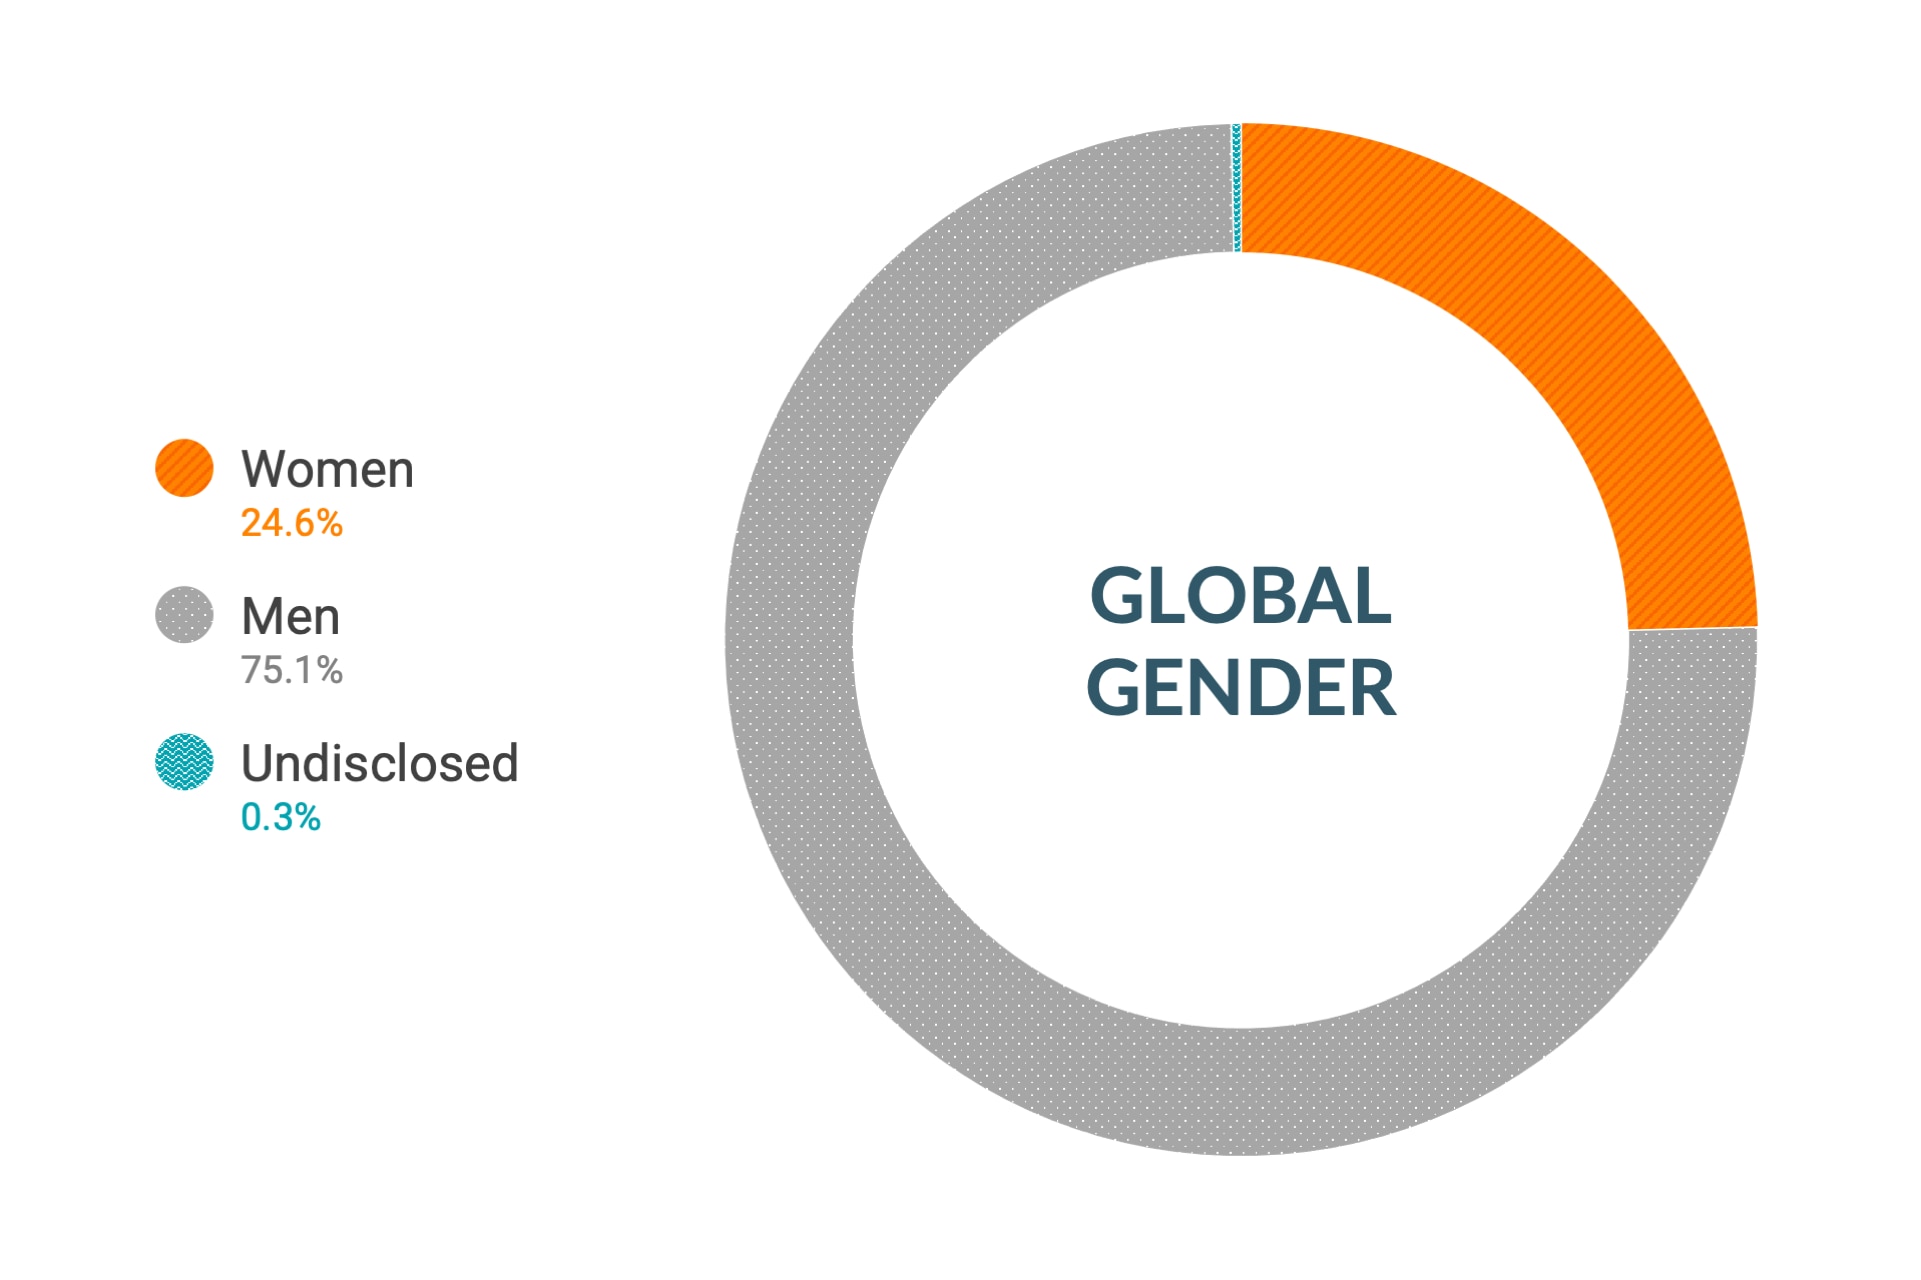 Dane firmy Cloudera dotyczące różnorodności i integracji dla płci w skali globalnej: kobiety 25,8%, mężczyźni 73,9%, nieujawnione 0,3%